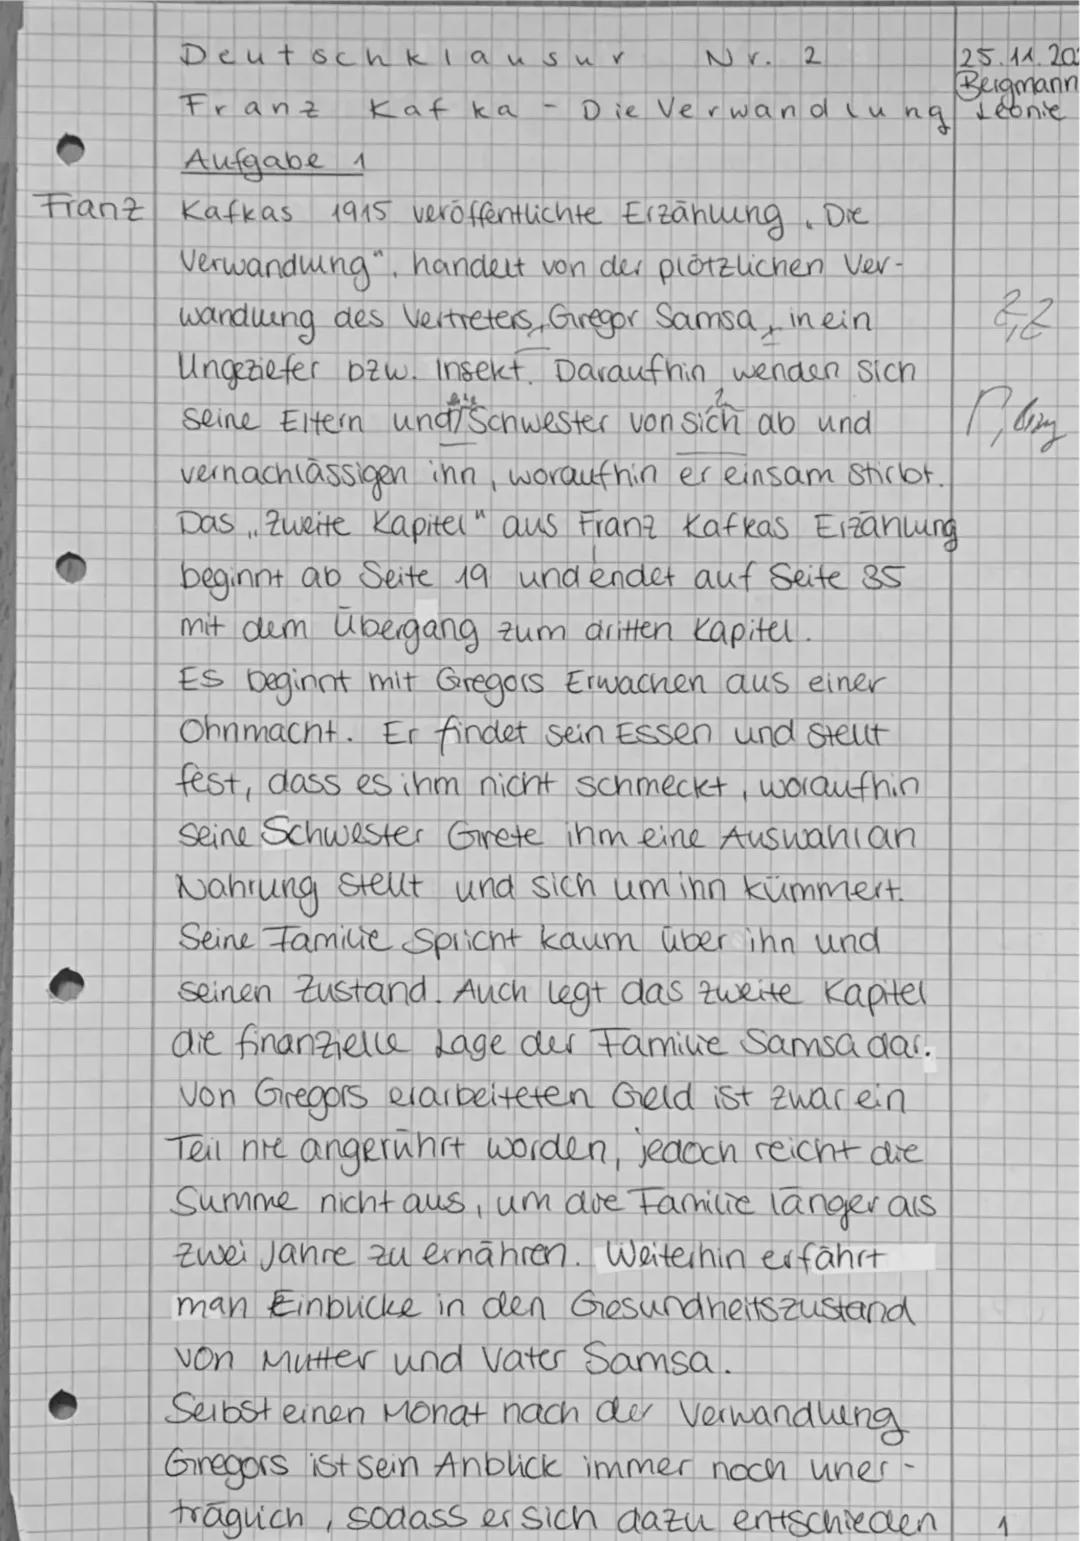 Deutschklausu
Franz
Aufgabe 1
Franz Kafkas
Kafka
#4
Nr. 2
Die Verwandlu
✓
ng
25.11.20
Bergmann
Leonie
1915 veröffentlichte Erzählung. Die
Ve